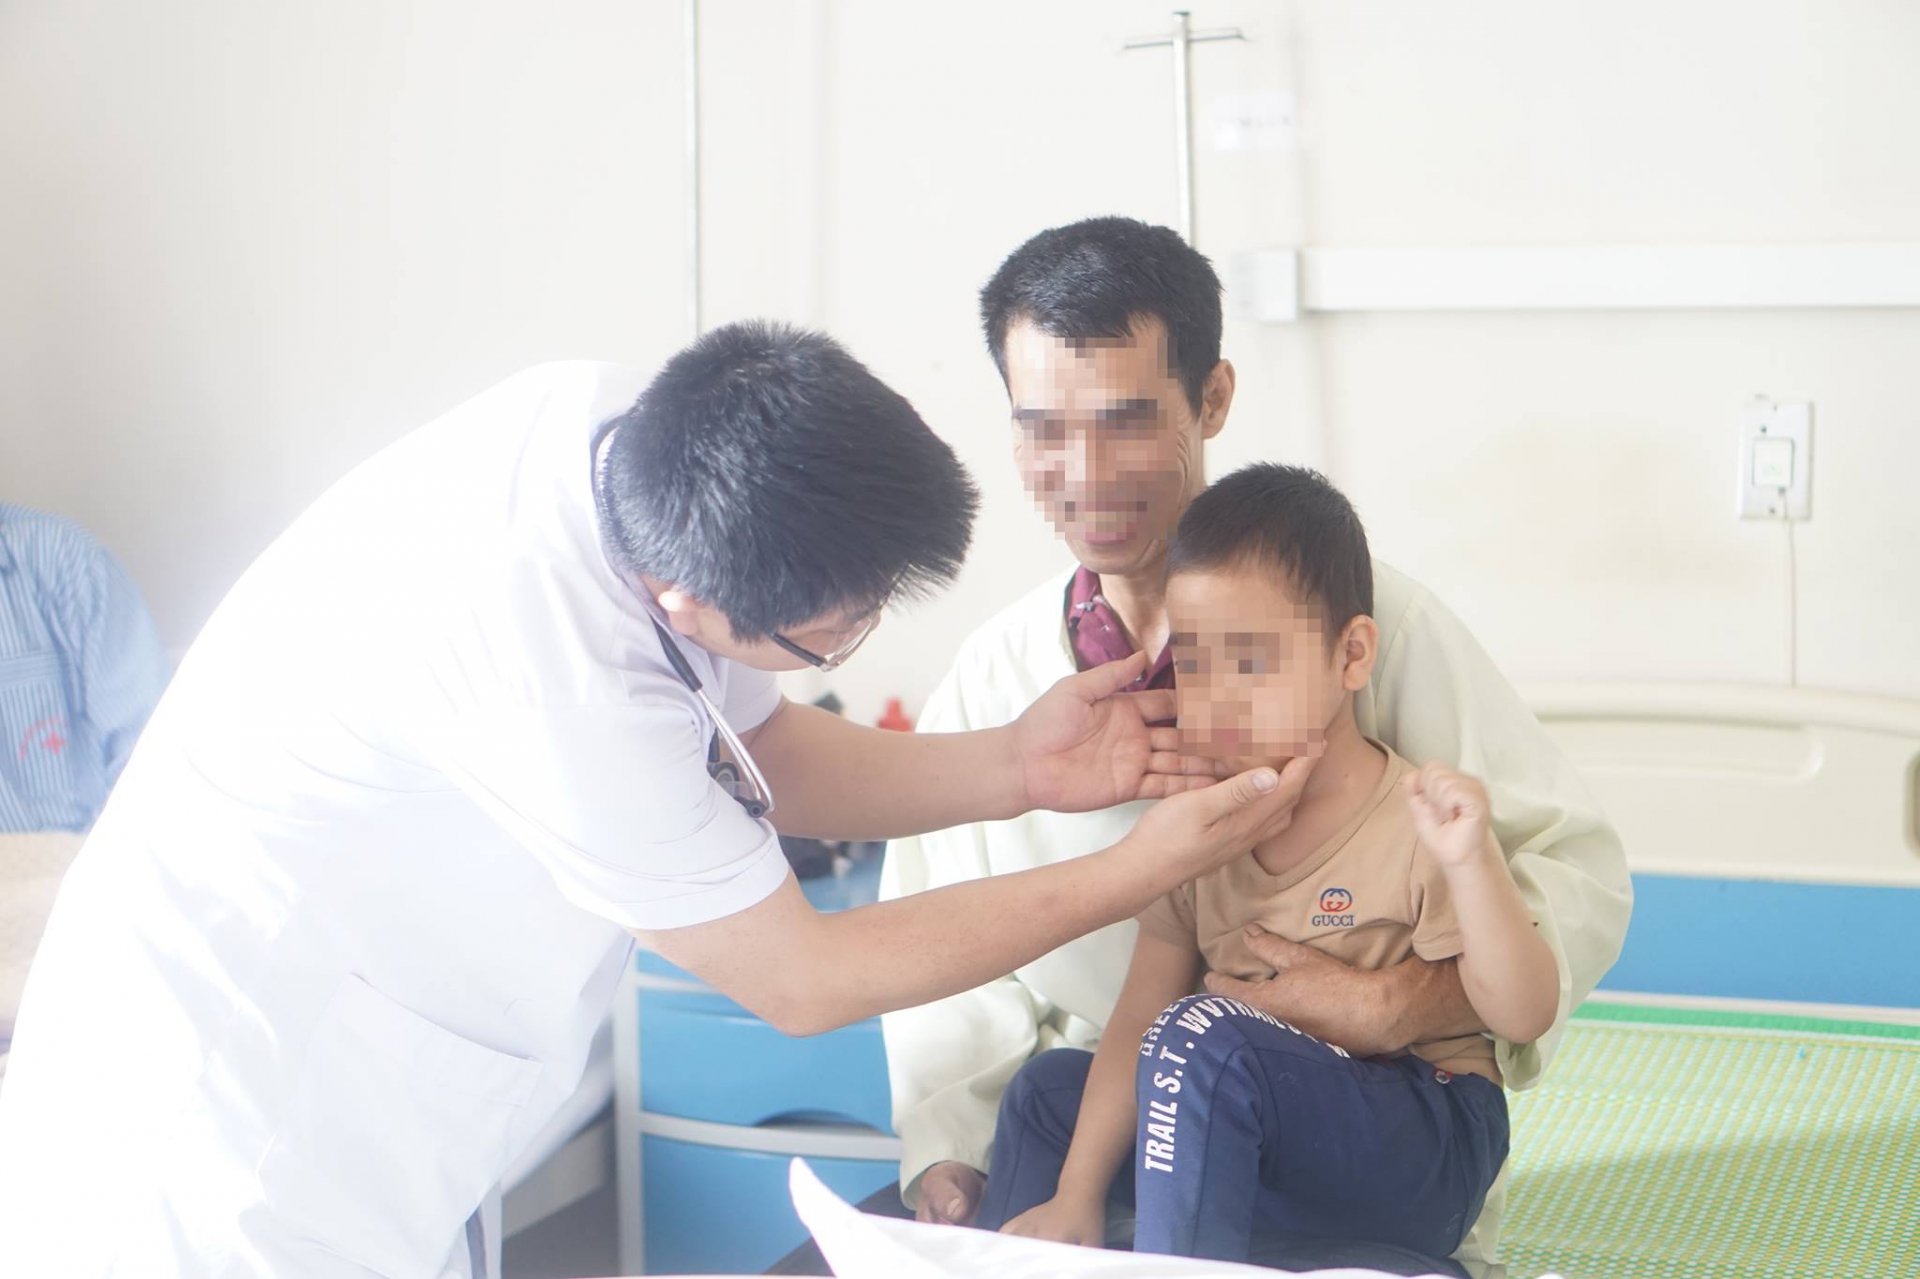 Bé trai 5 tuổi có dấu hiệu mọc ria mép, lông mặt được các bác sĩ khám, xác định nguyên nhân tại bệnh viện Nội tiết Trung Ương